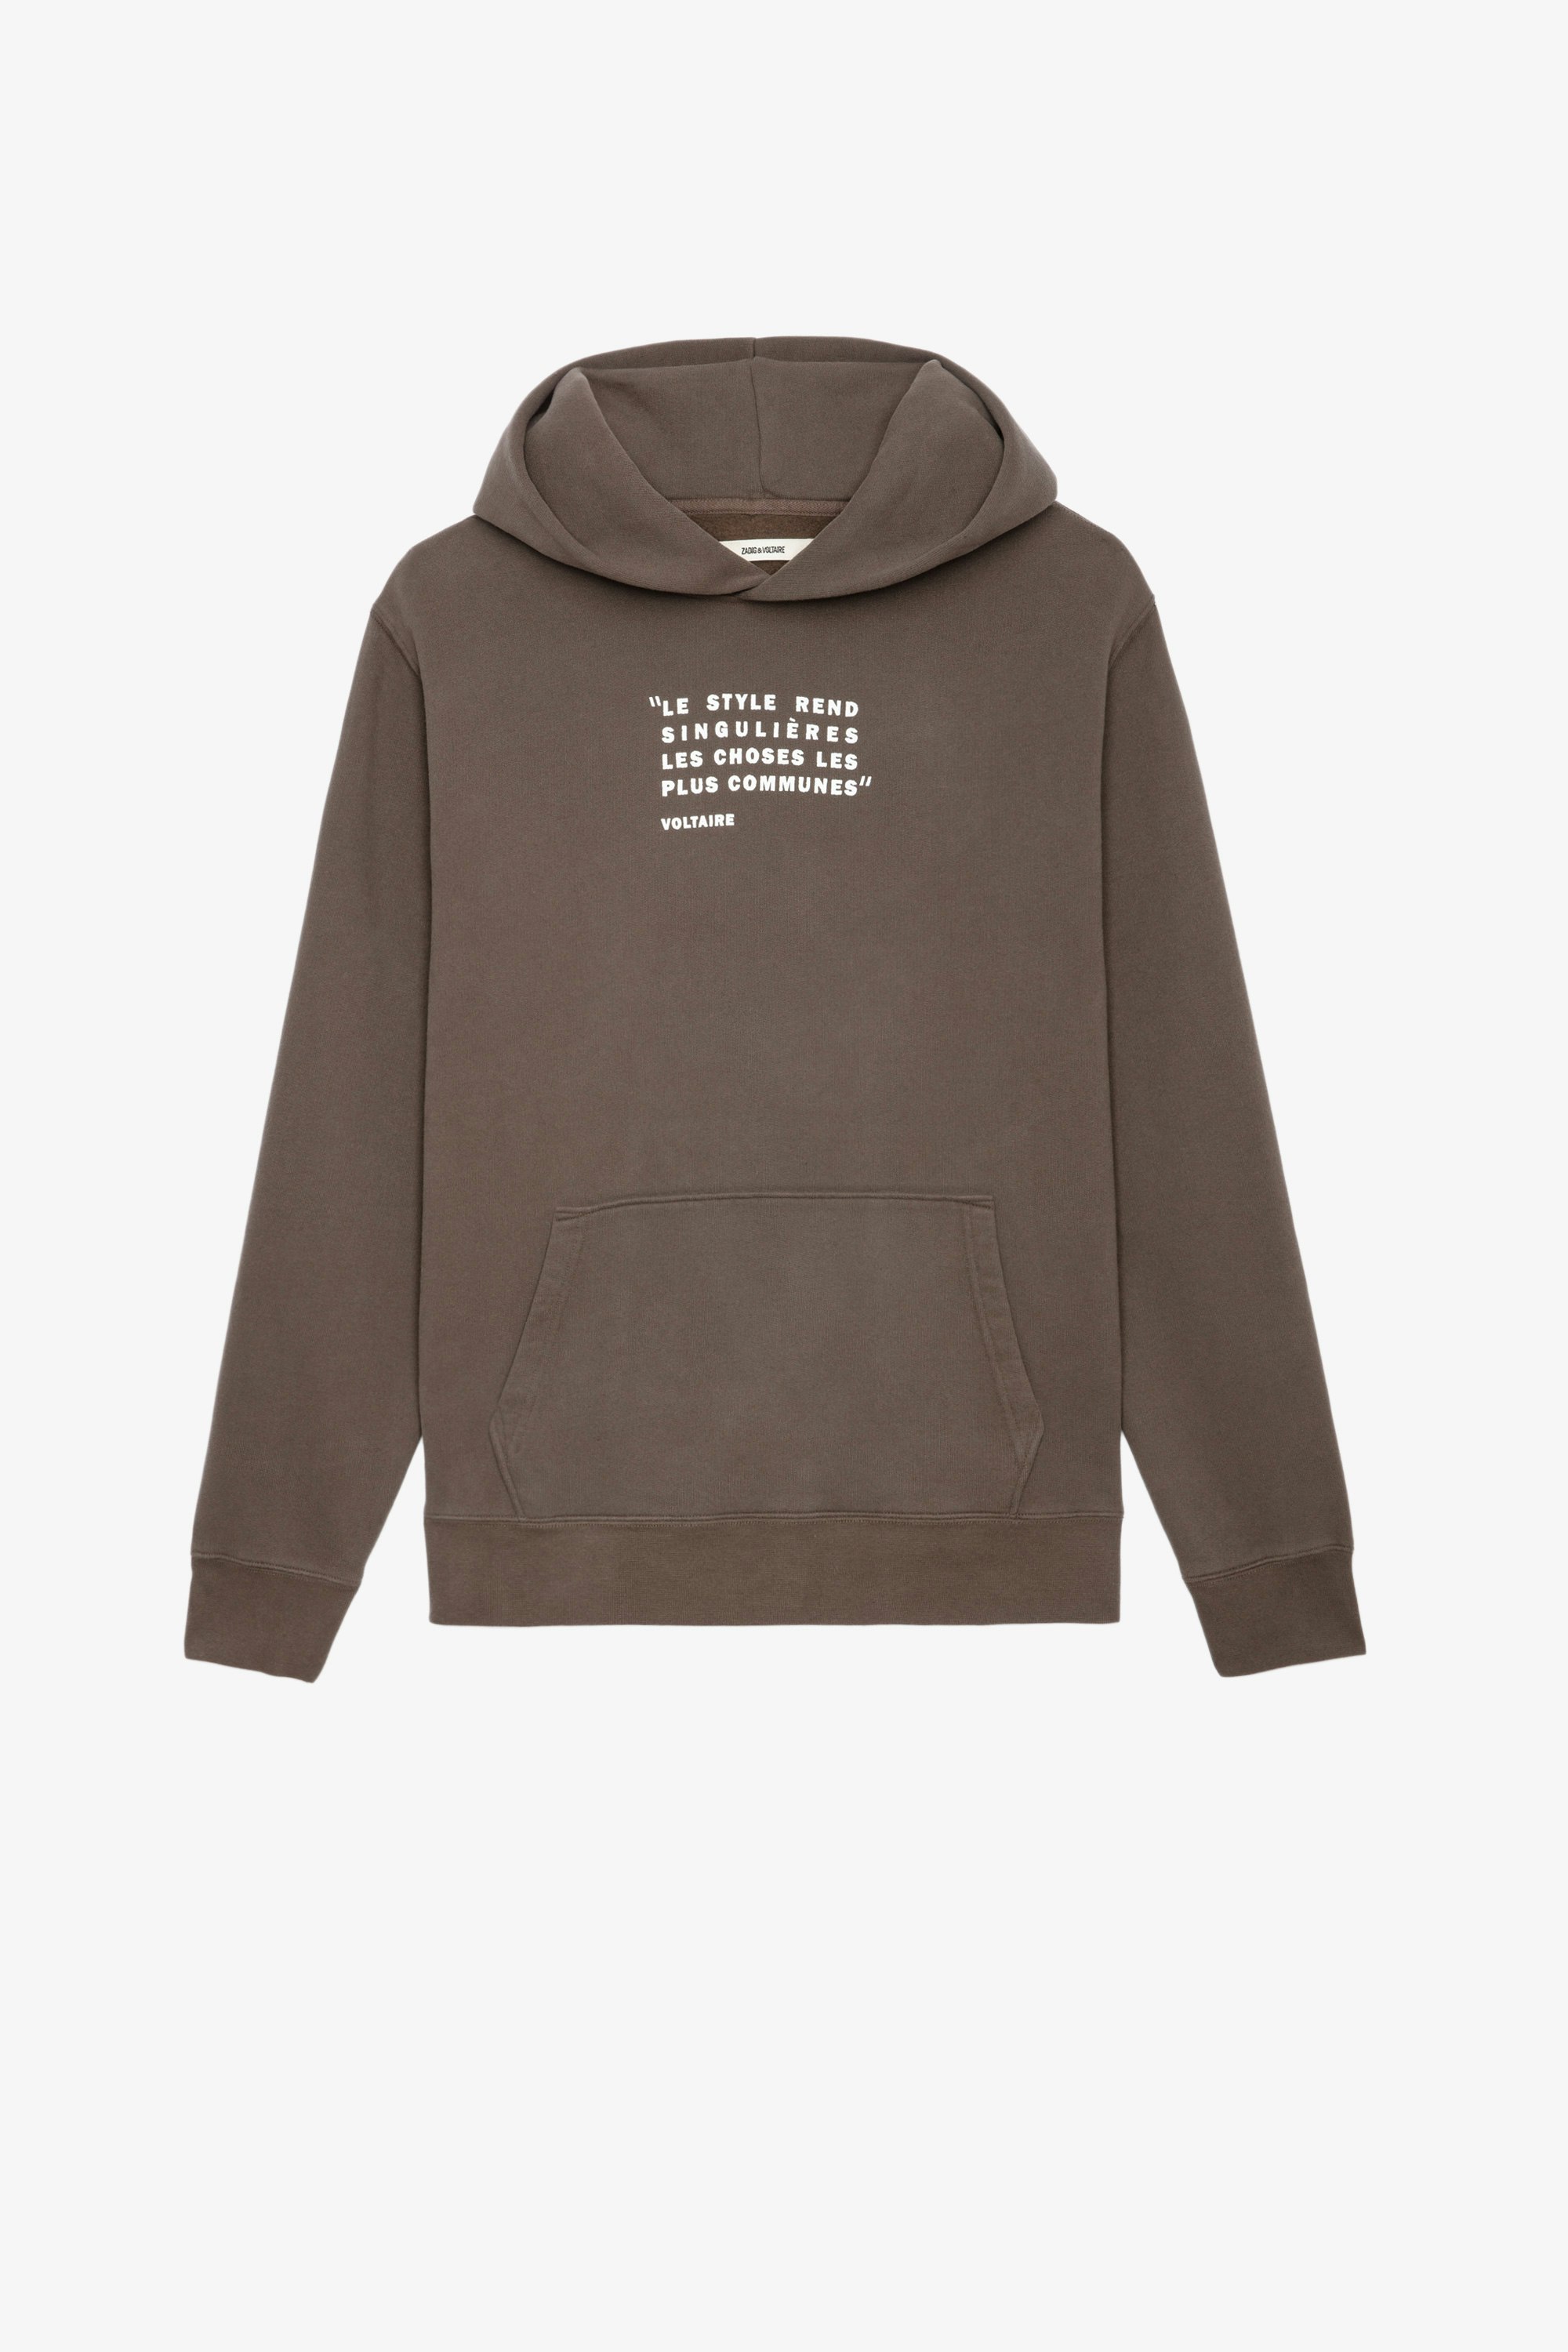 On-trend men's hooded sweatshirts, printed sweatshirts, hoodies 